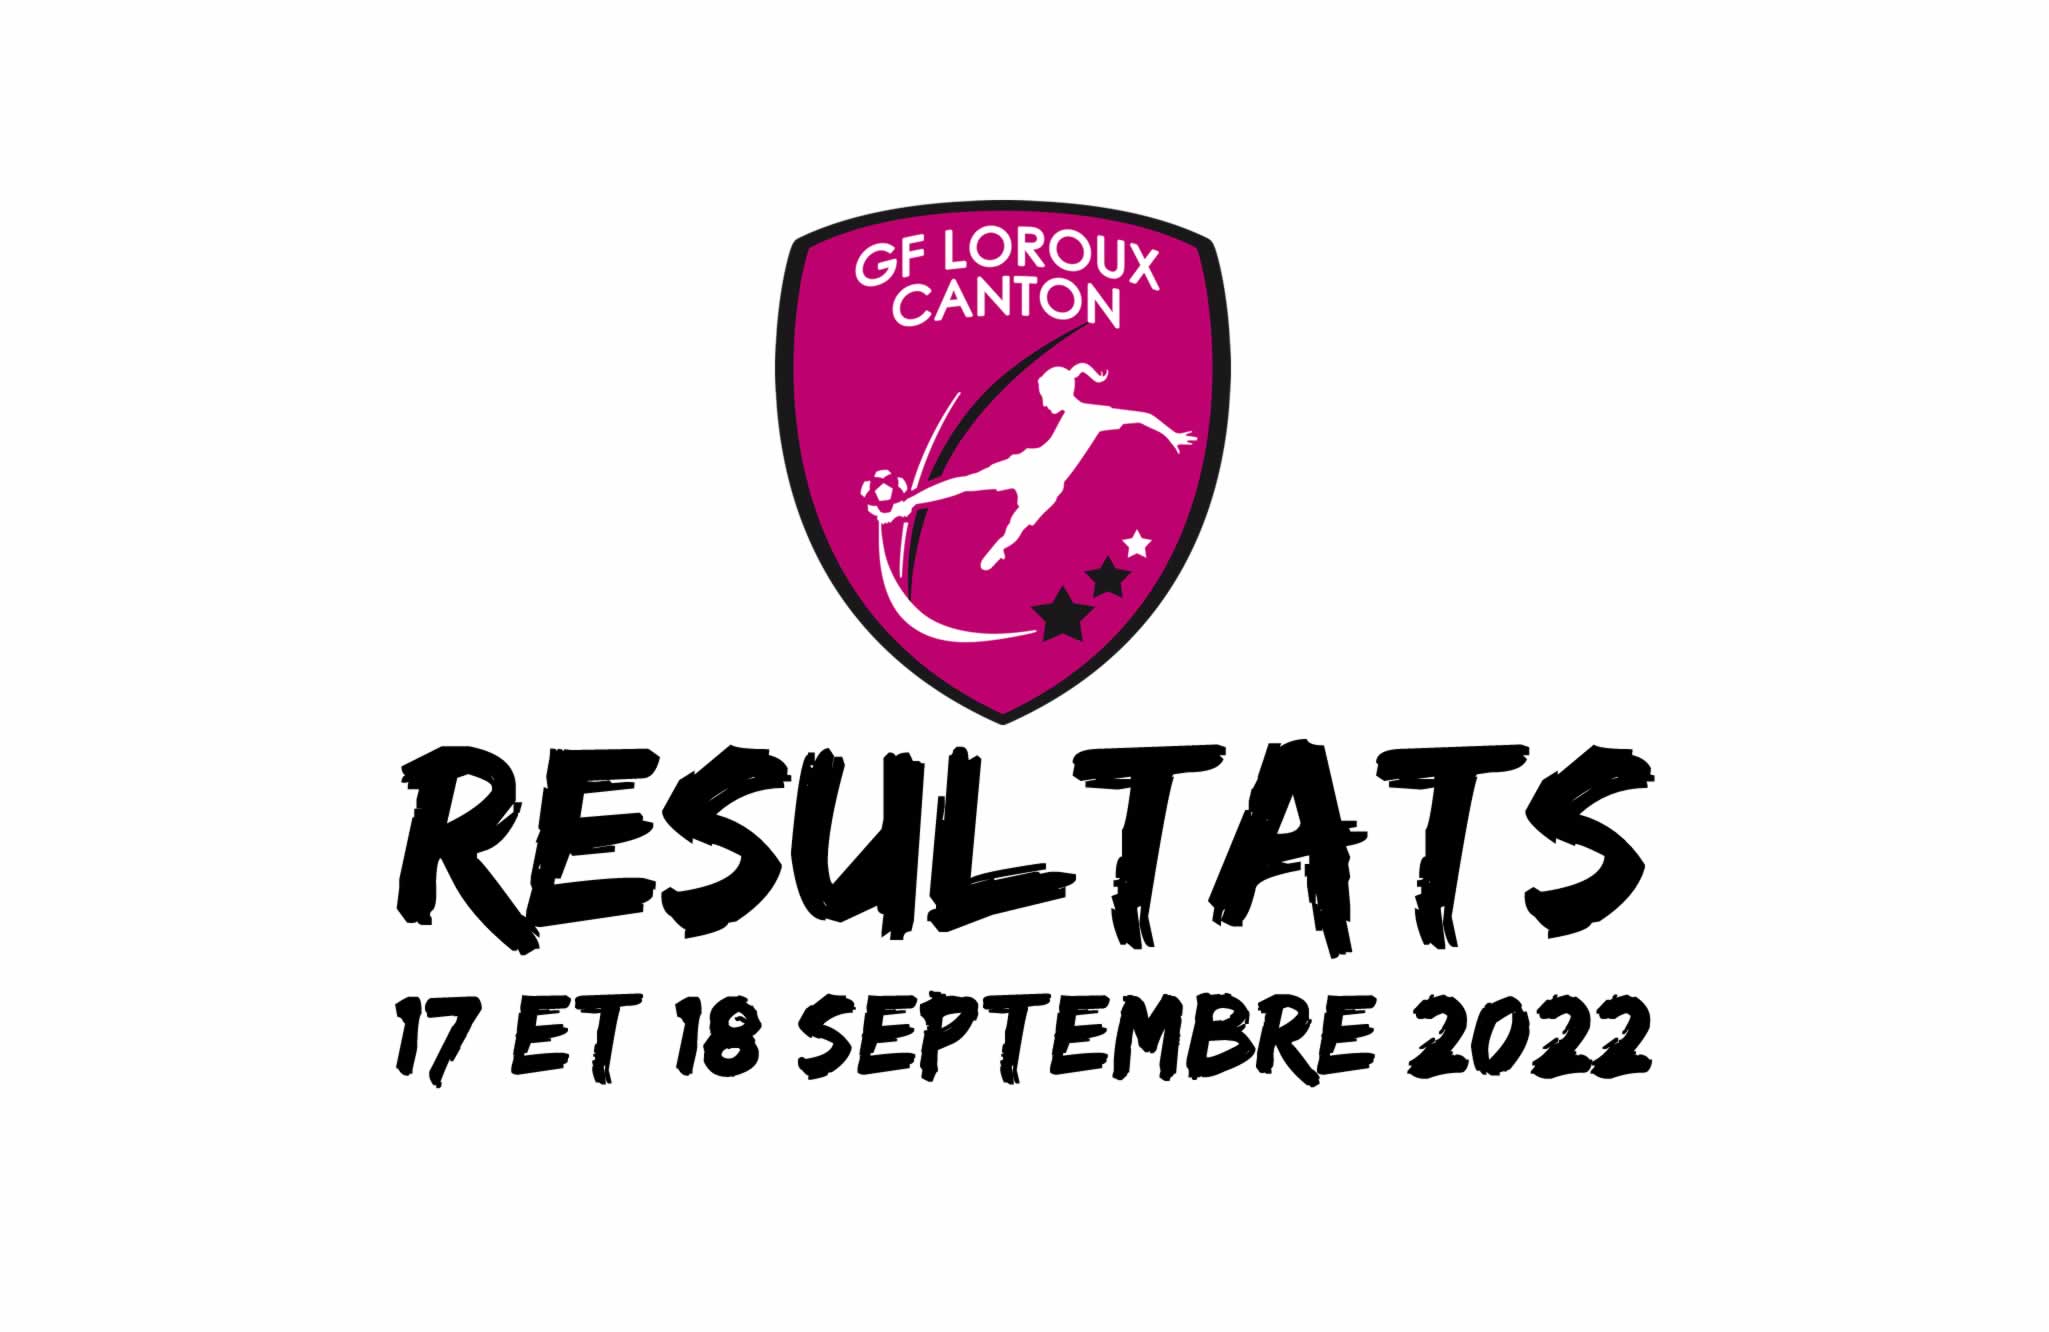 Résultats des matchs joués 17 et 18 septembre 2022 par les équipes de football féminin du GF Loroux Canton.